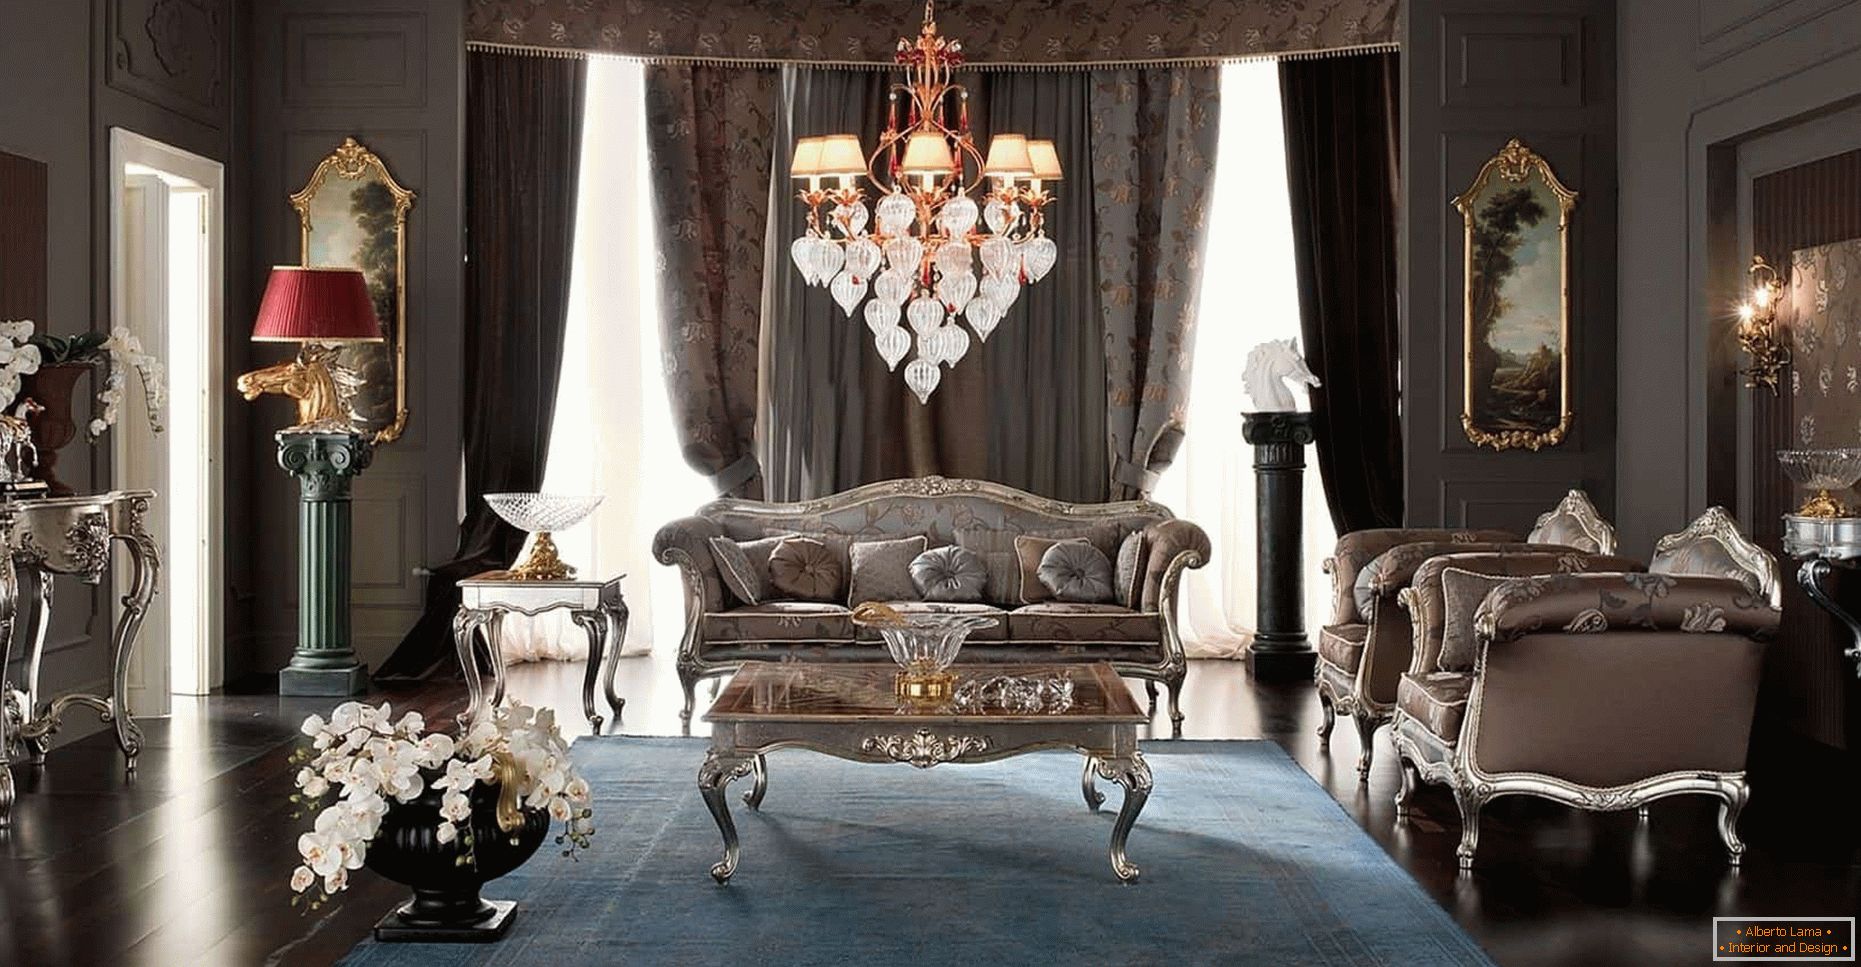 A nappali sötét színű, klasszikus stílusú design